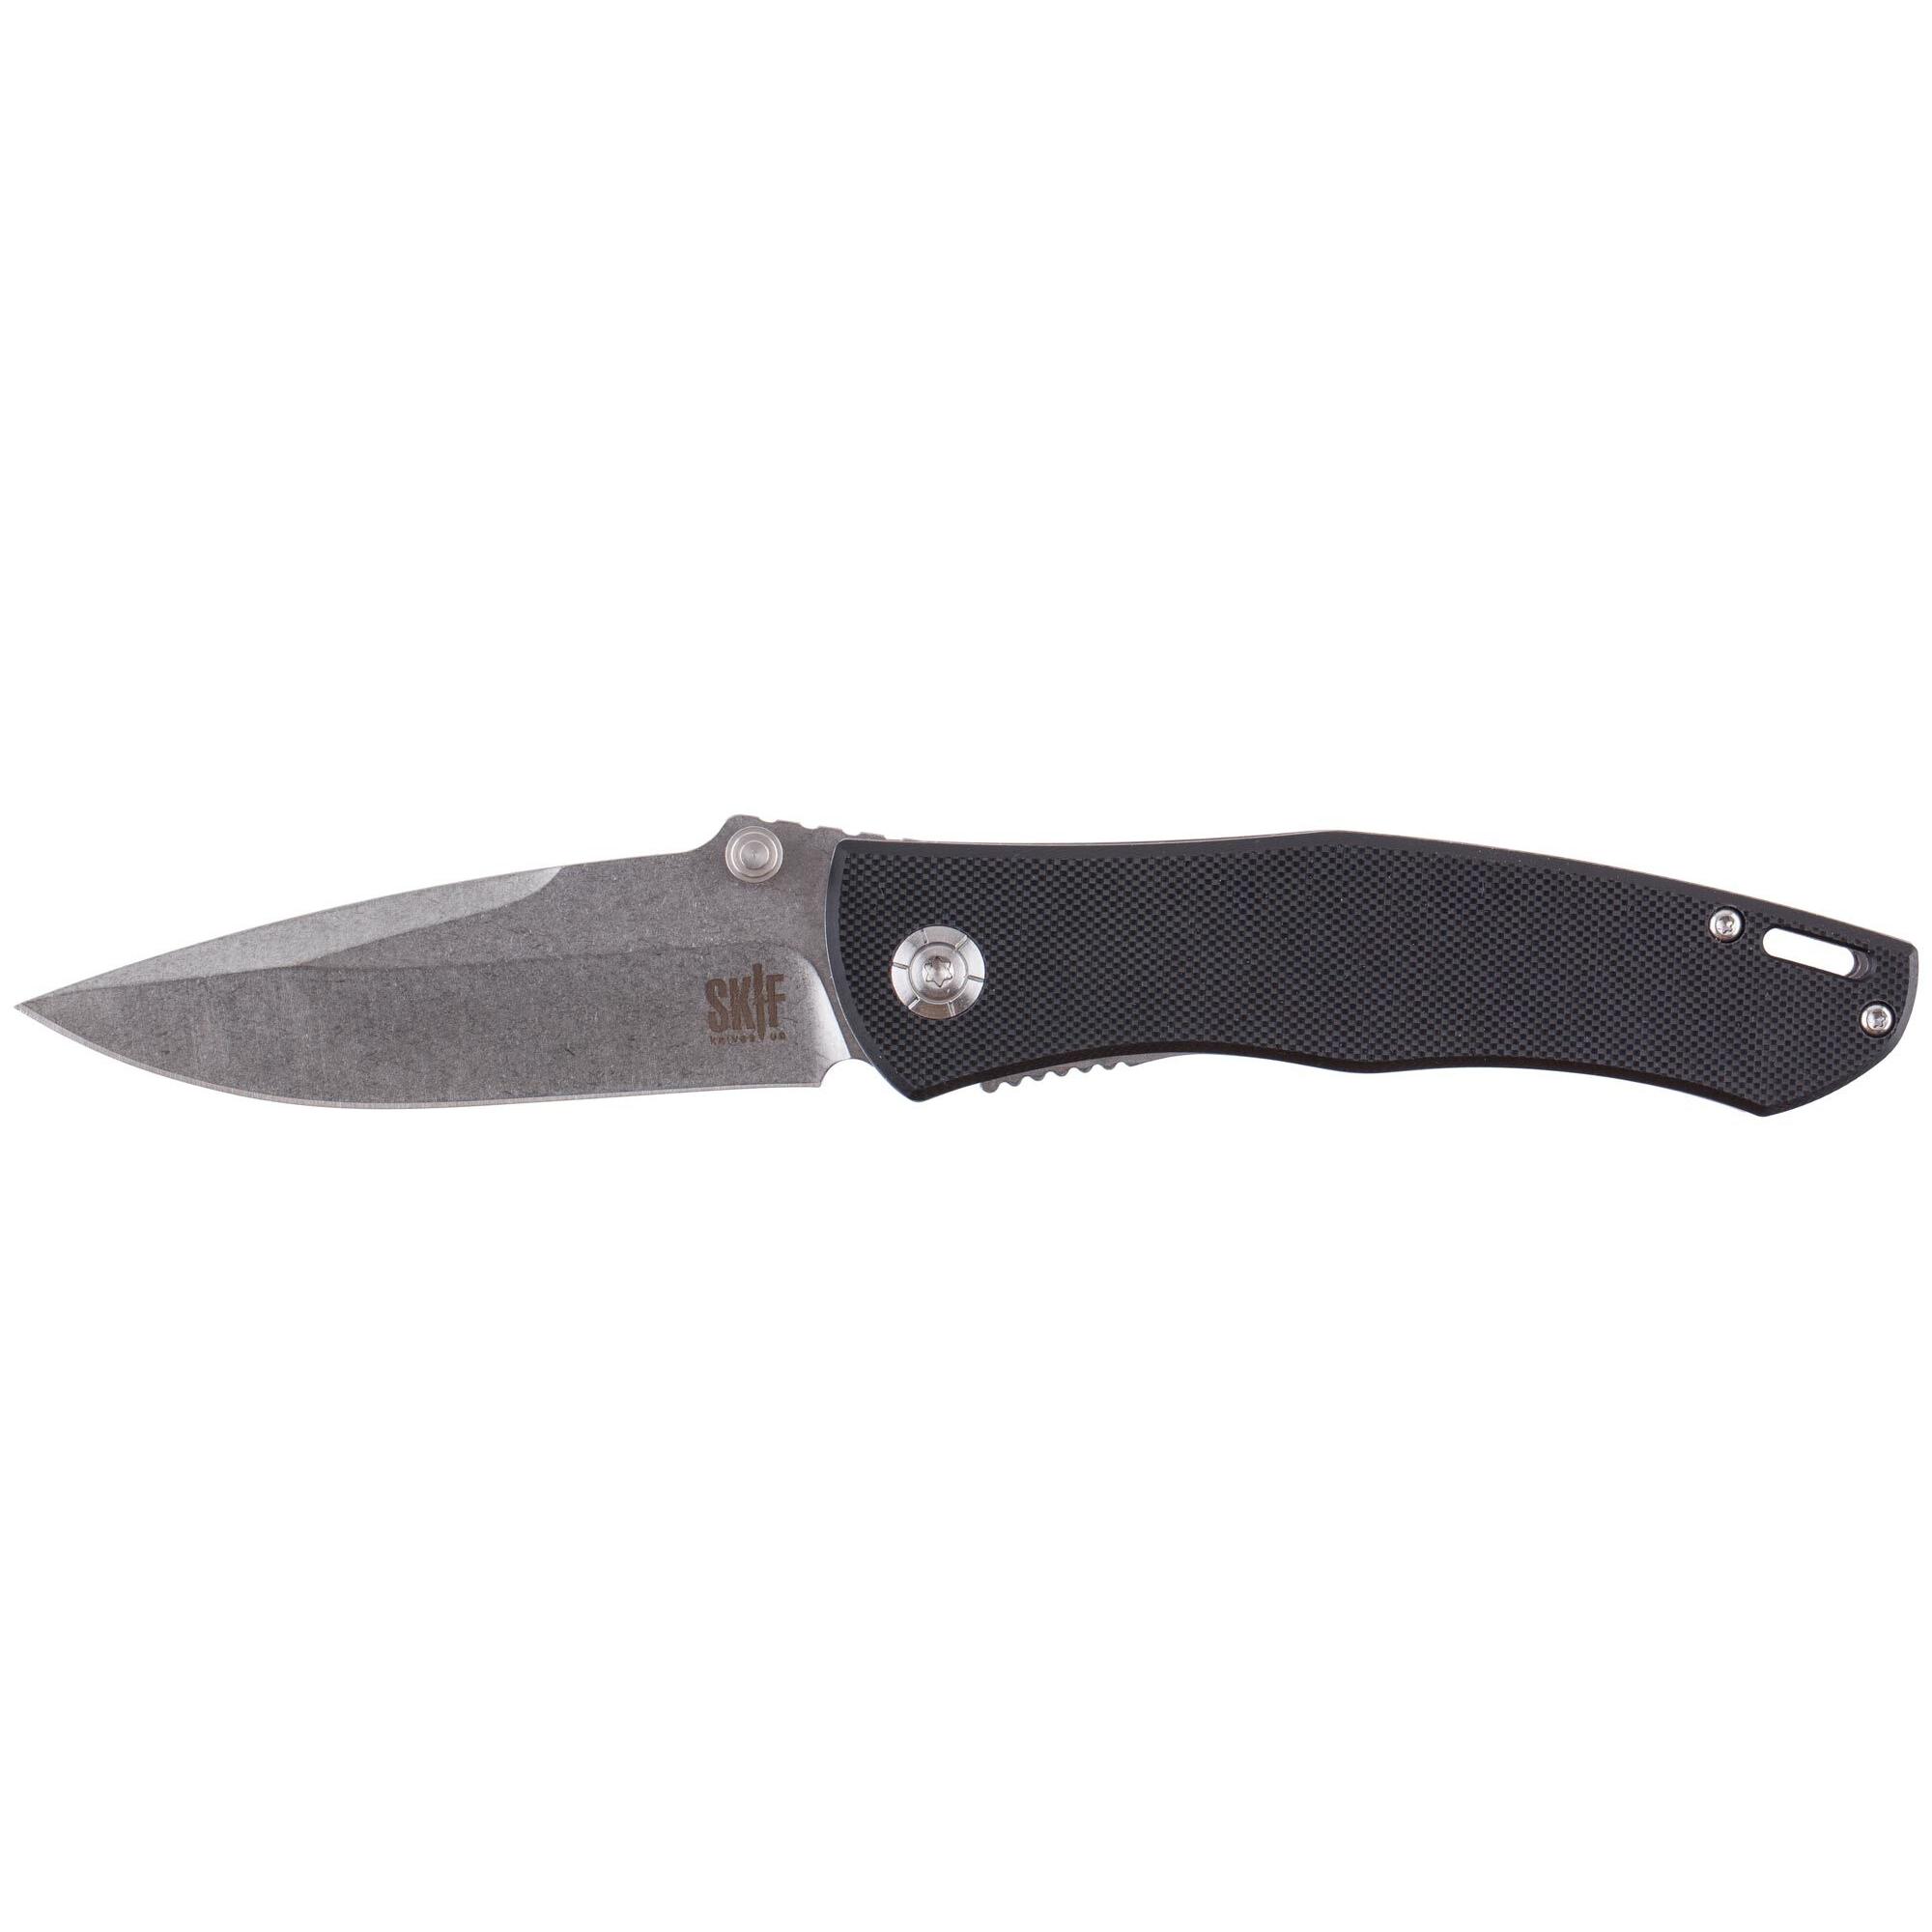 Нож Skif Swing Black IS-002B 1765.02.13